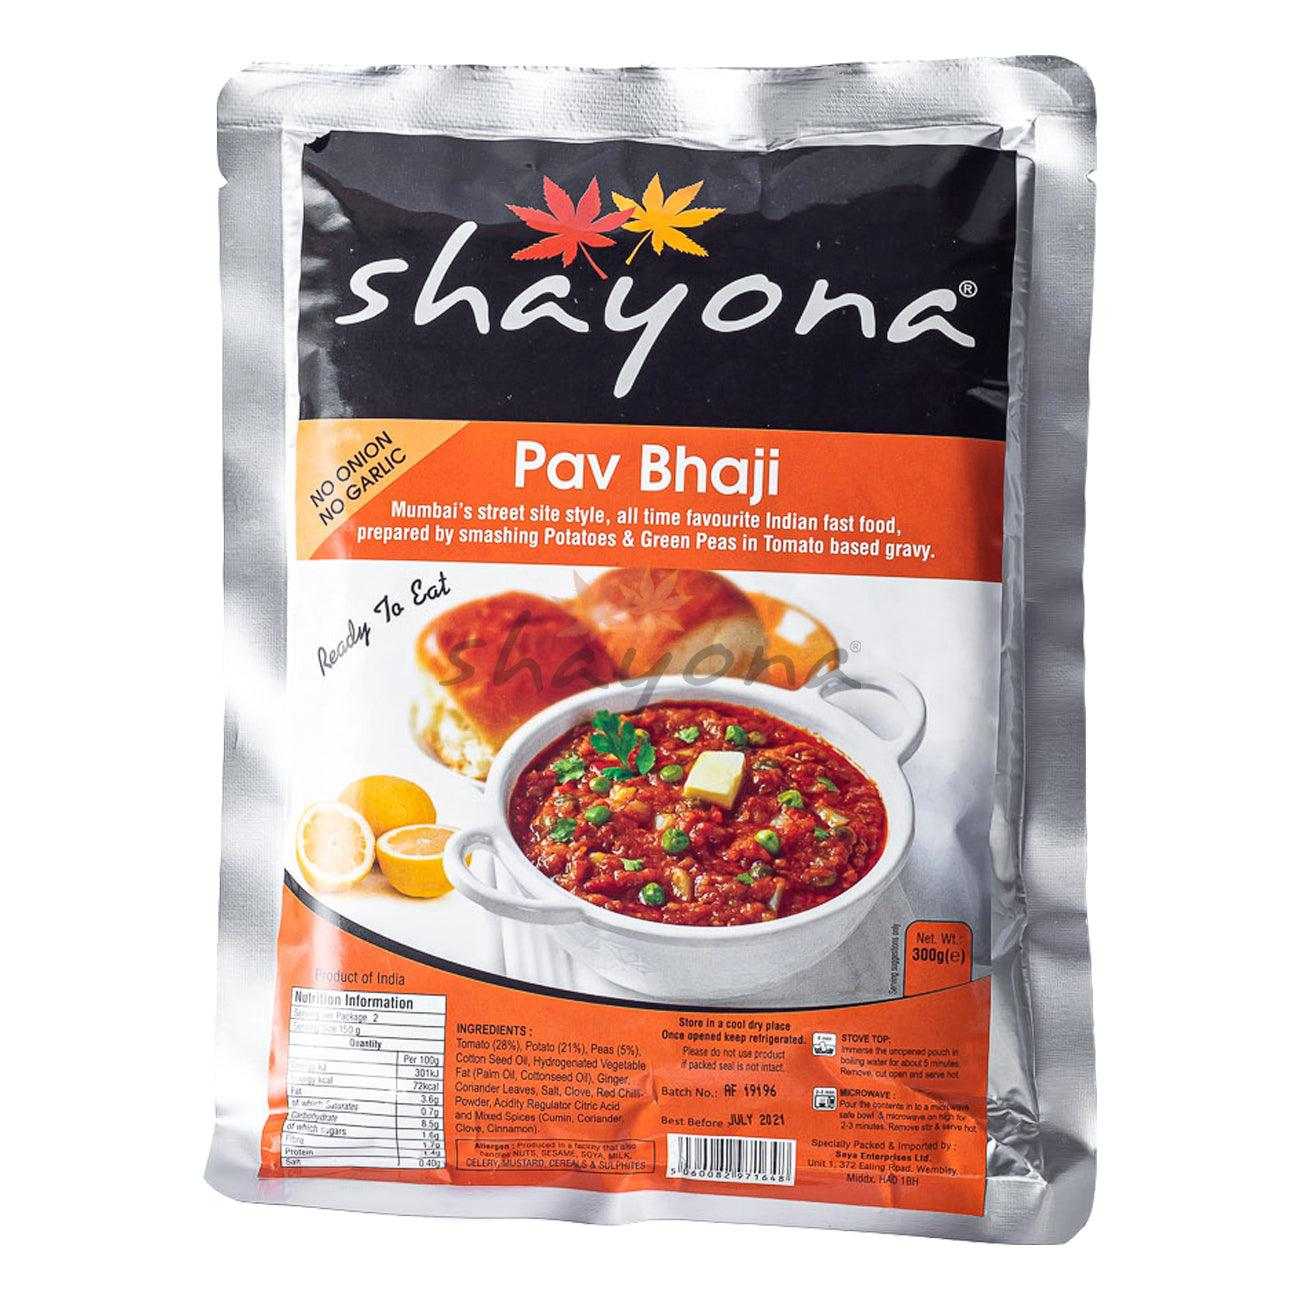 Shayona Pav Bhaji